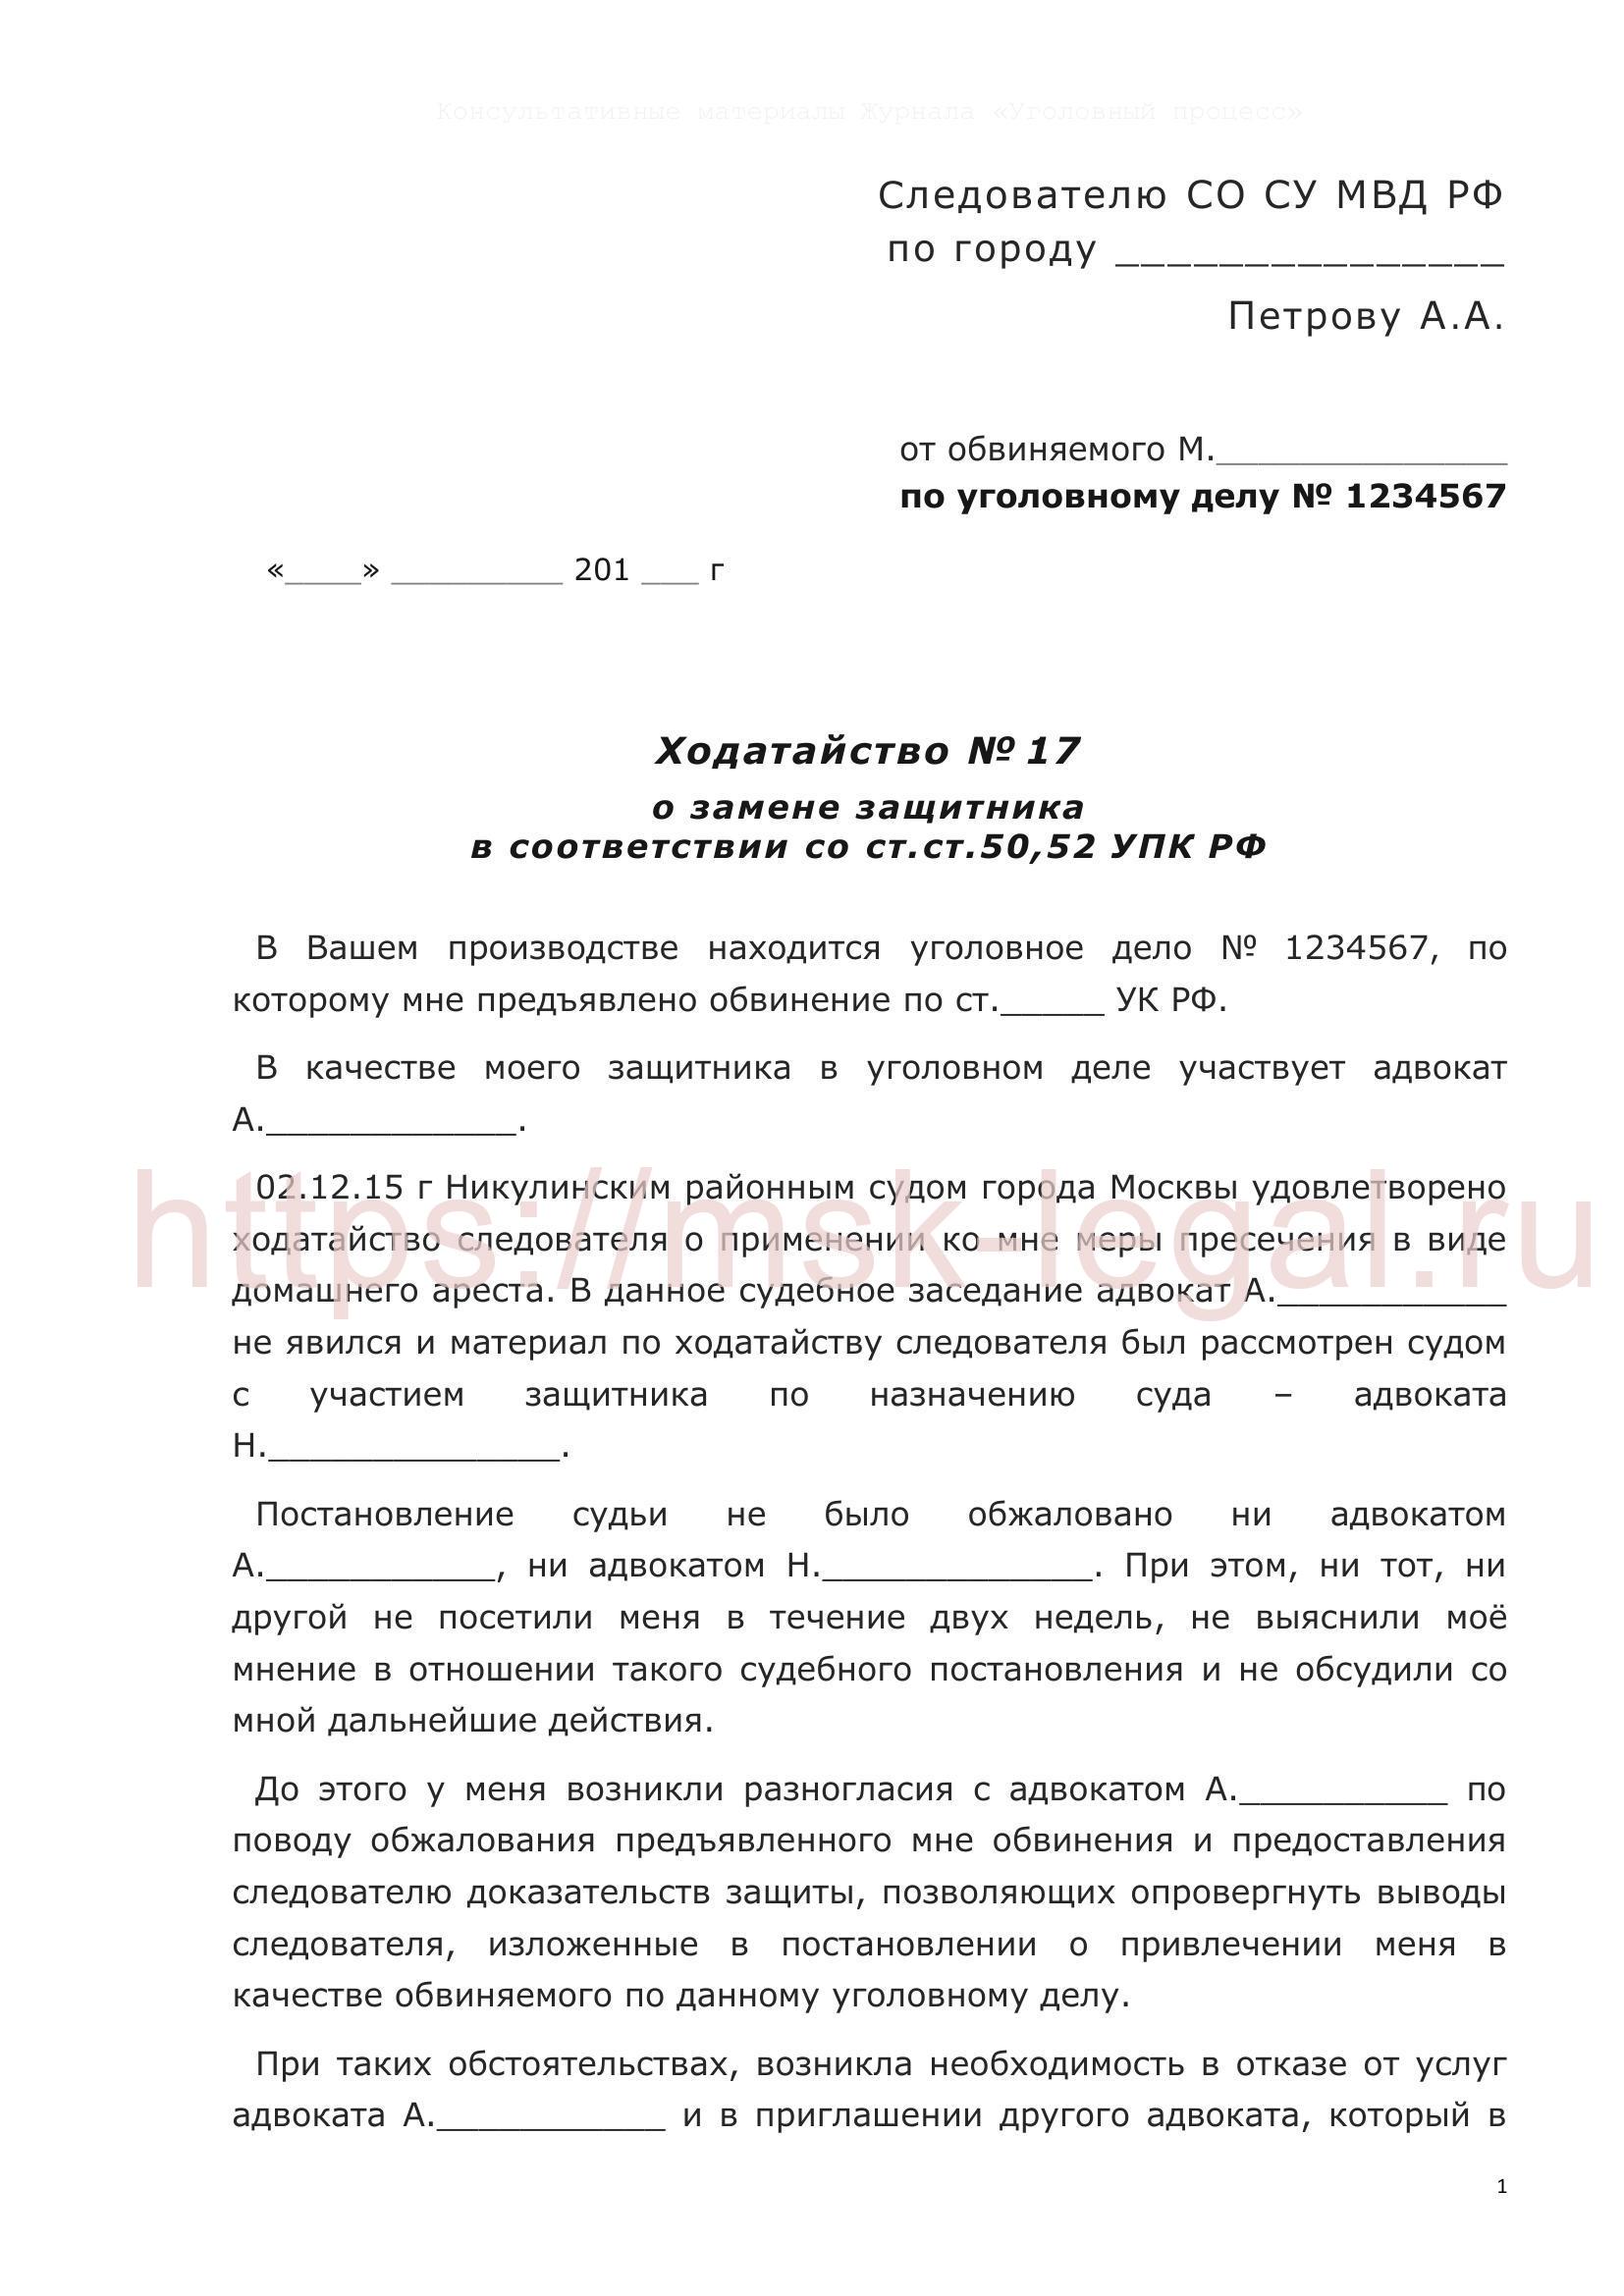 Ходатайство о замене адвоката в соответствии со ст. 50, 52 УПК РФ